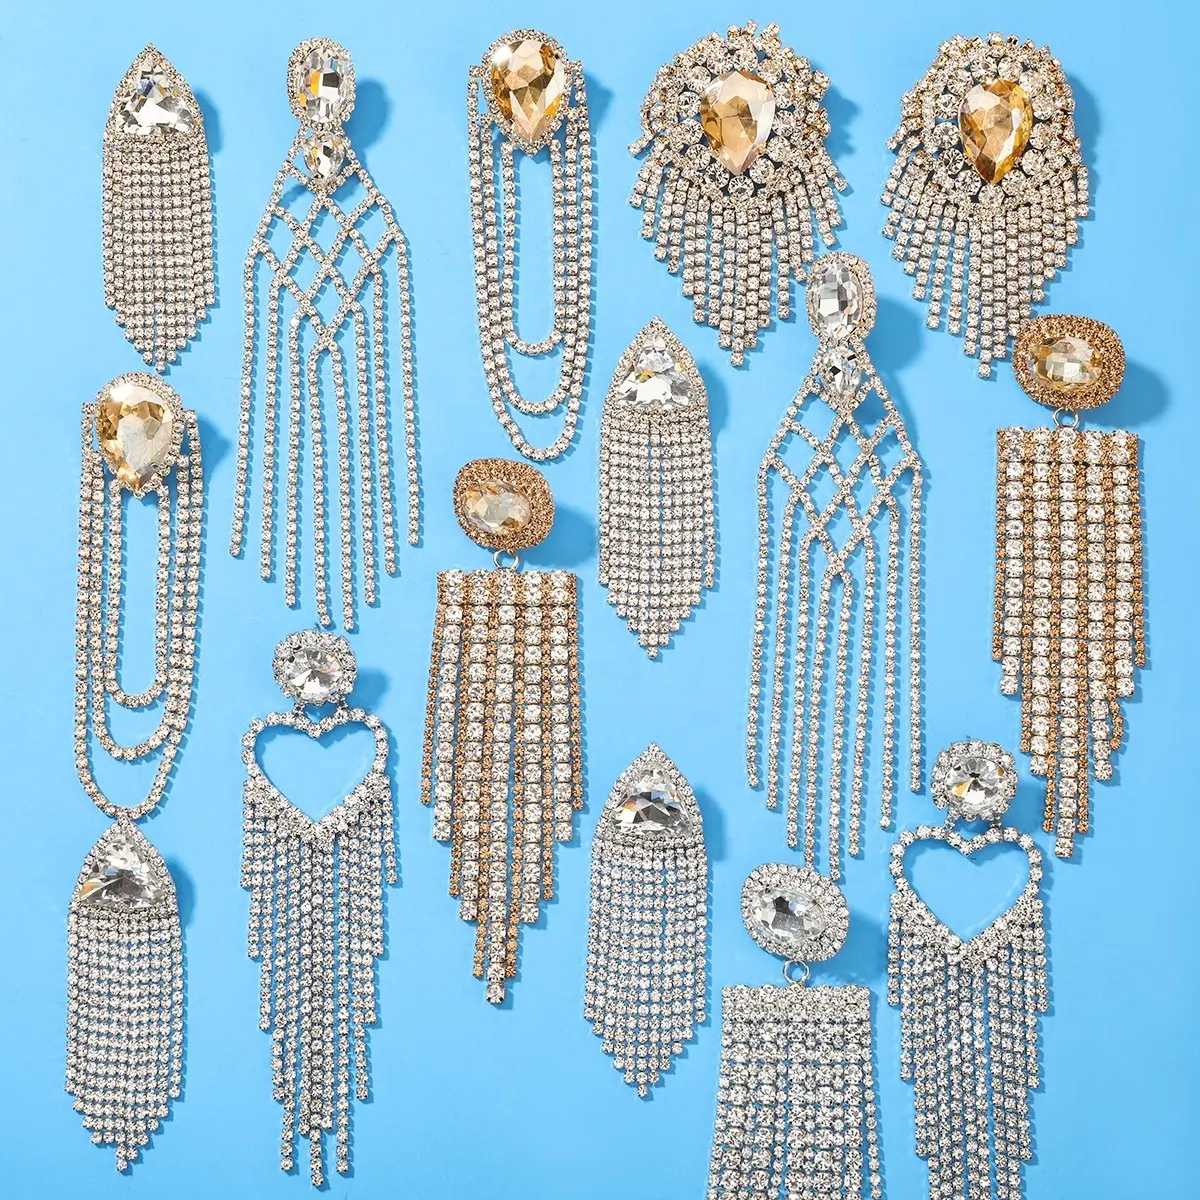 SM Amazon Best selling Fashion Jewelry Earrings ZA Metal Dangle Earrings For Women Statement Geometric Drop Earrings